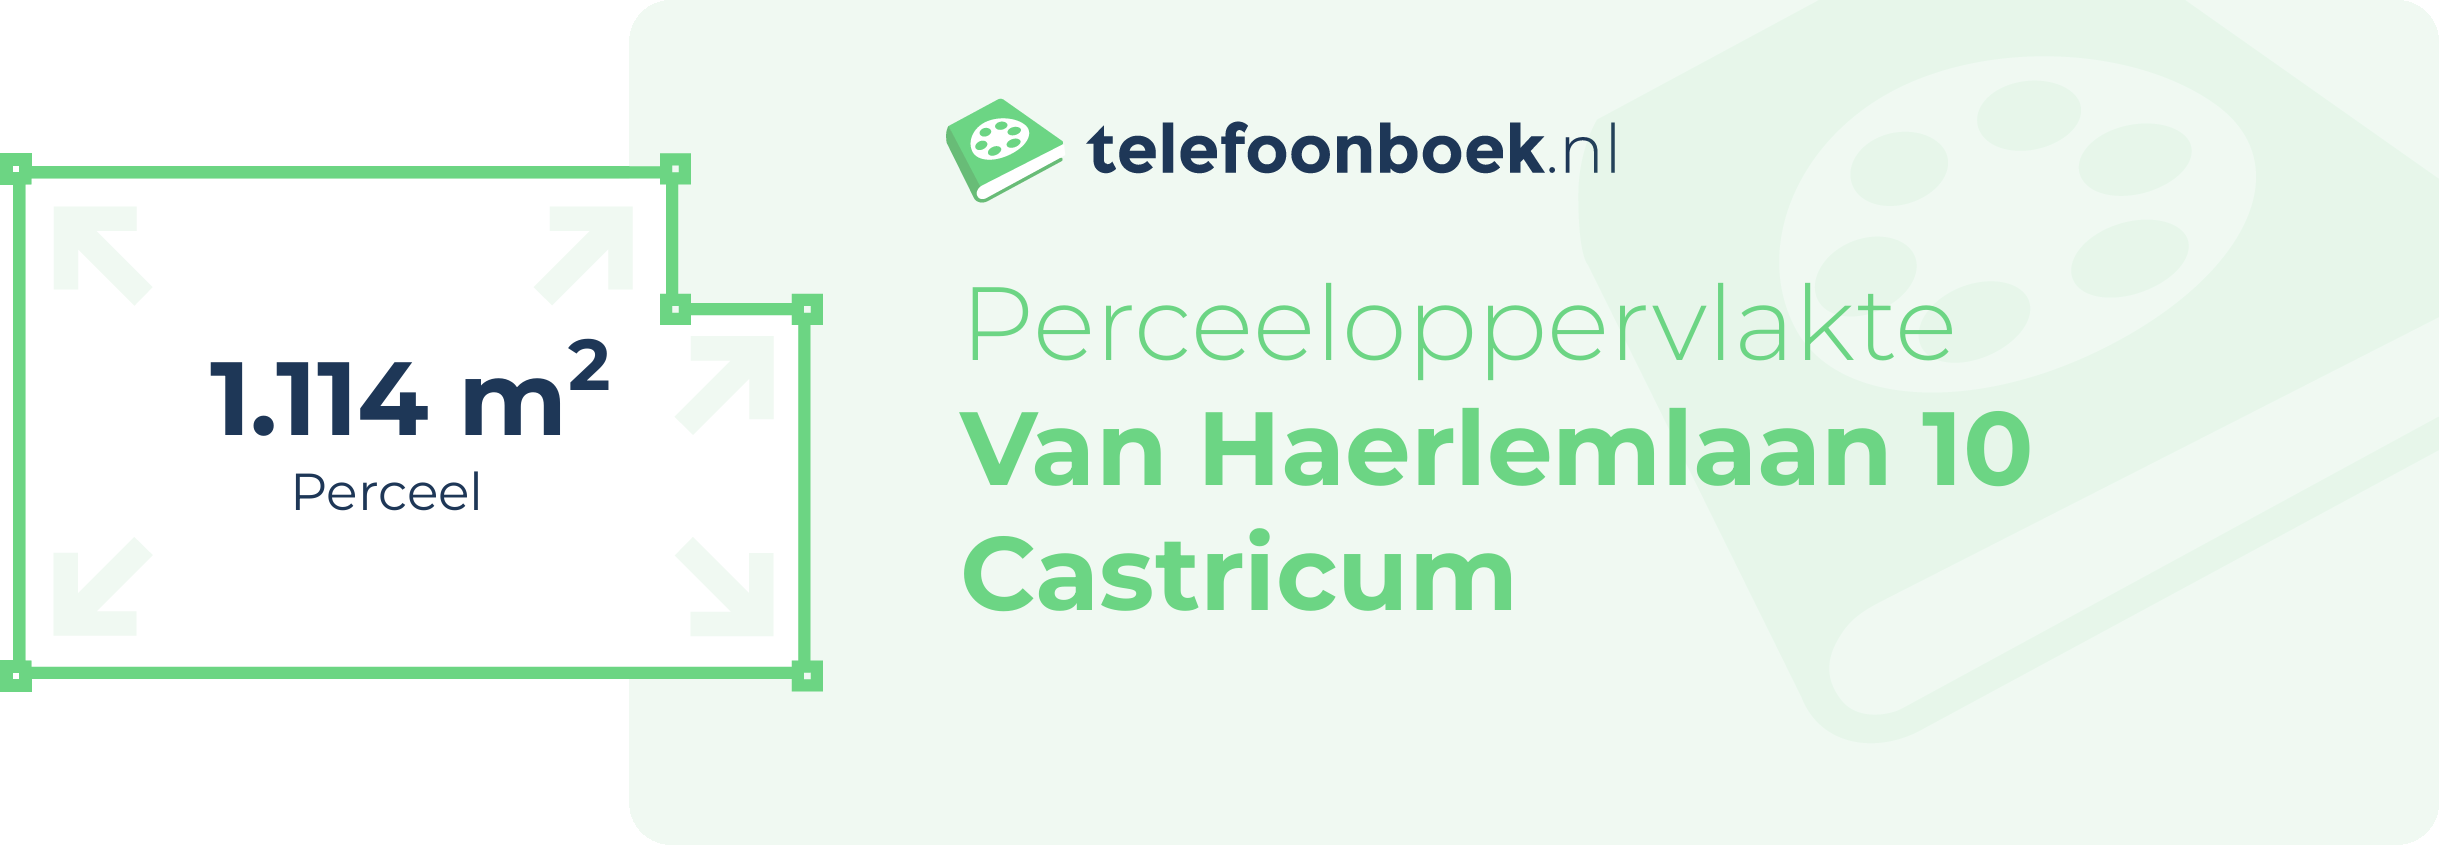 Perceeloppervlakte Van Haerlemlaan 10 Castricum